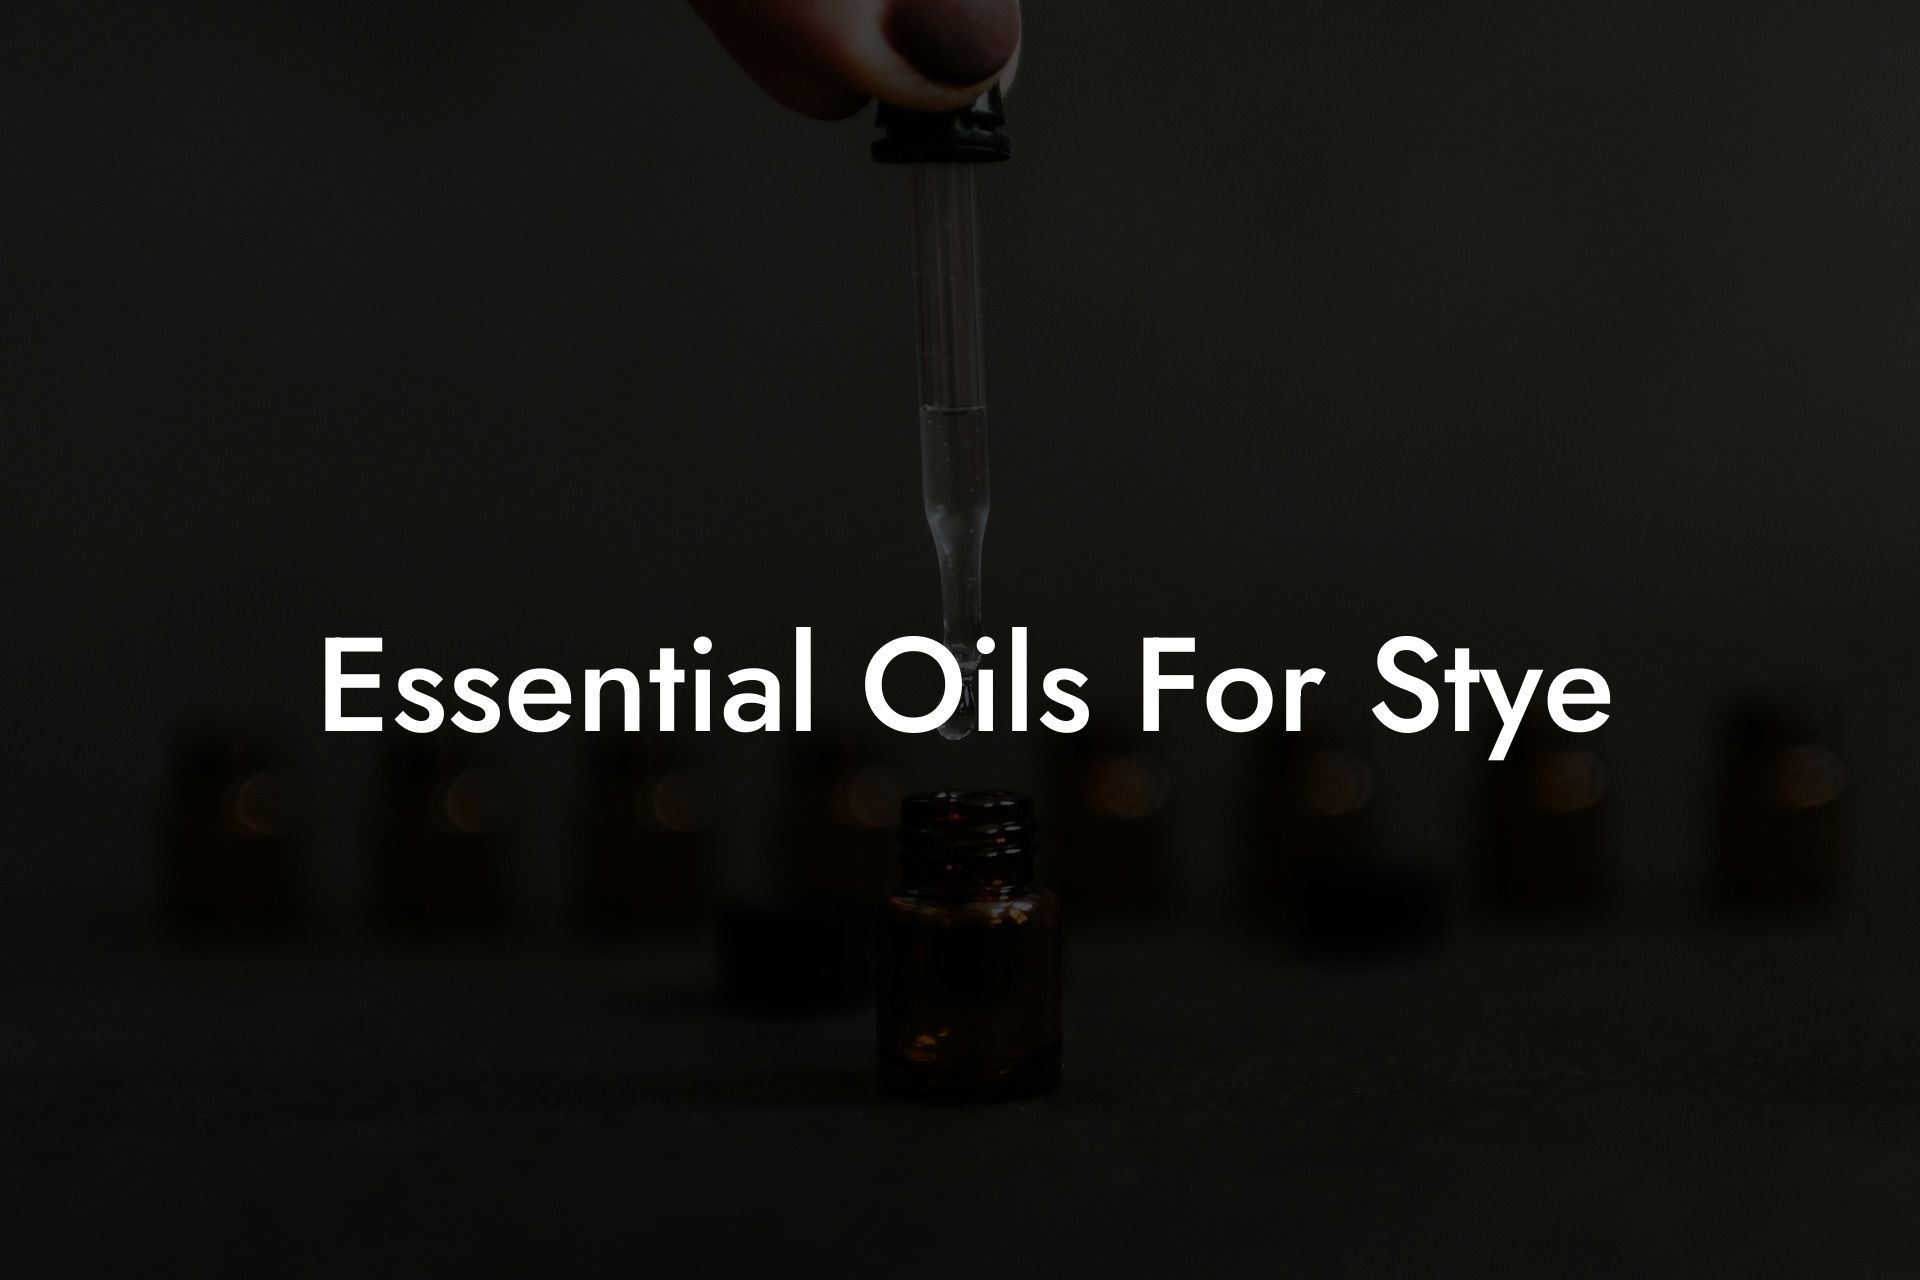 Essential Oils For Stye